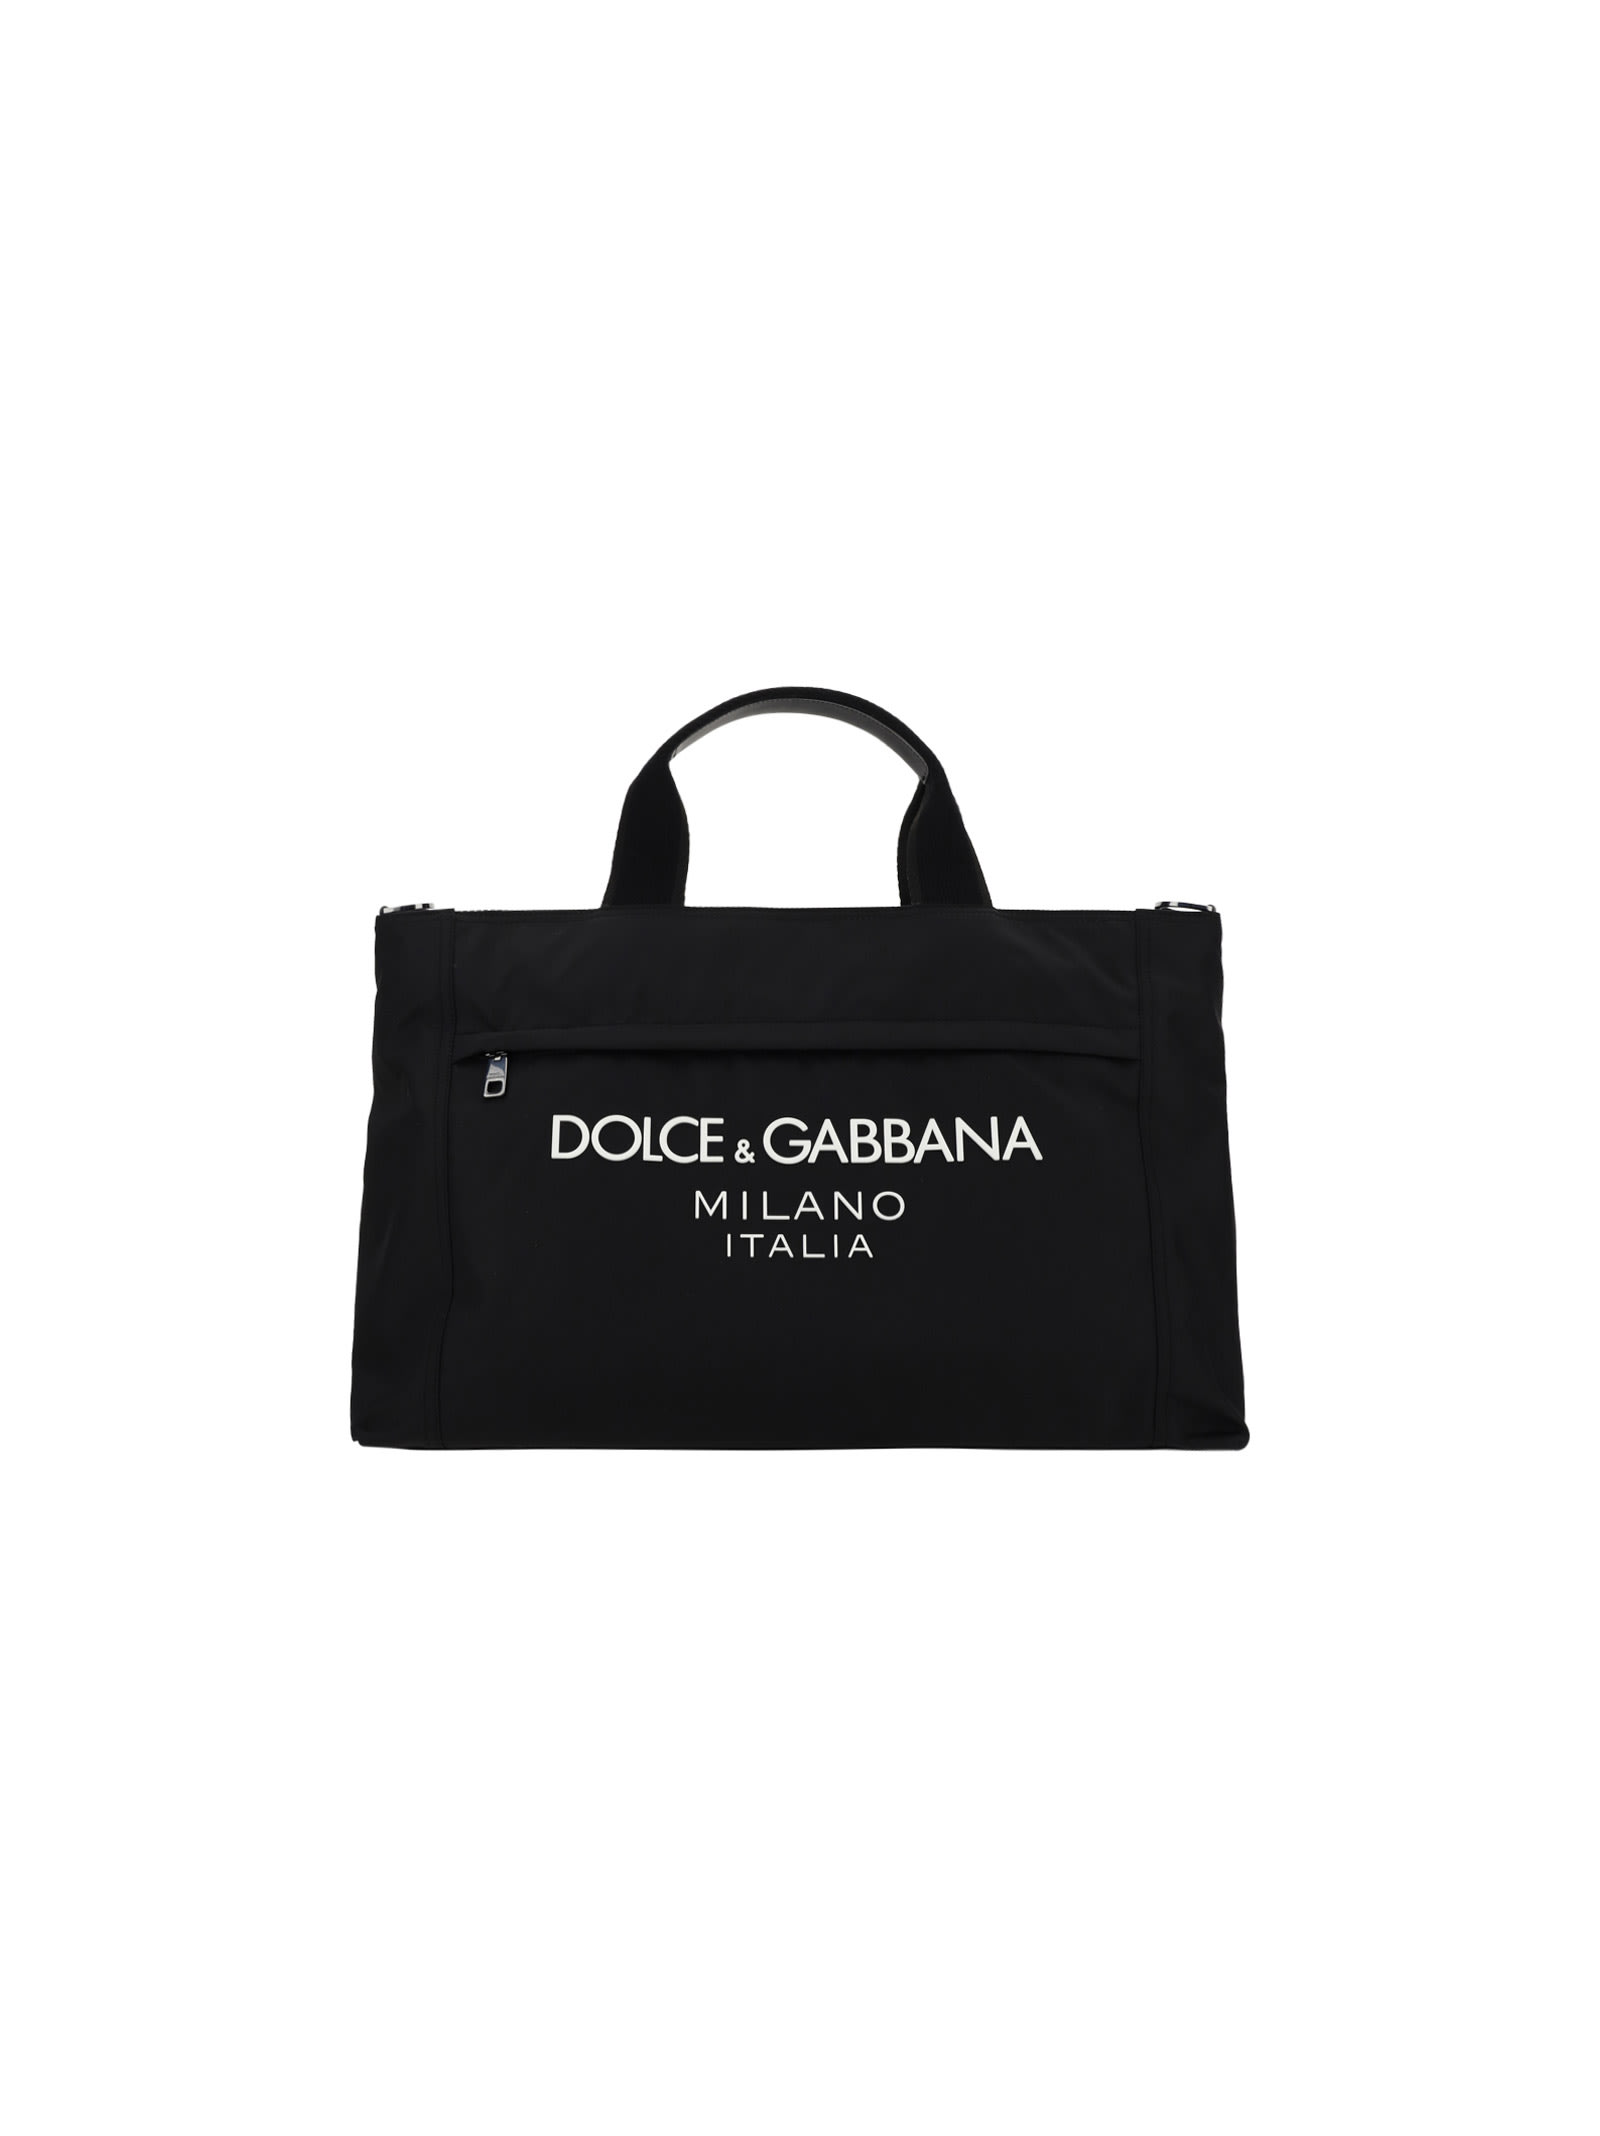 Dolce & Gabbana Shopping Bag | italist